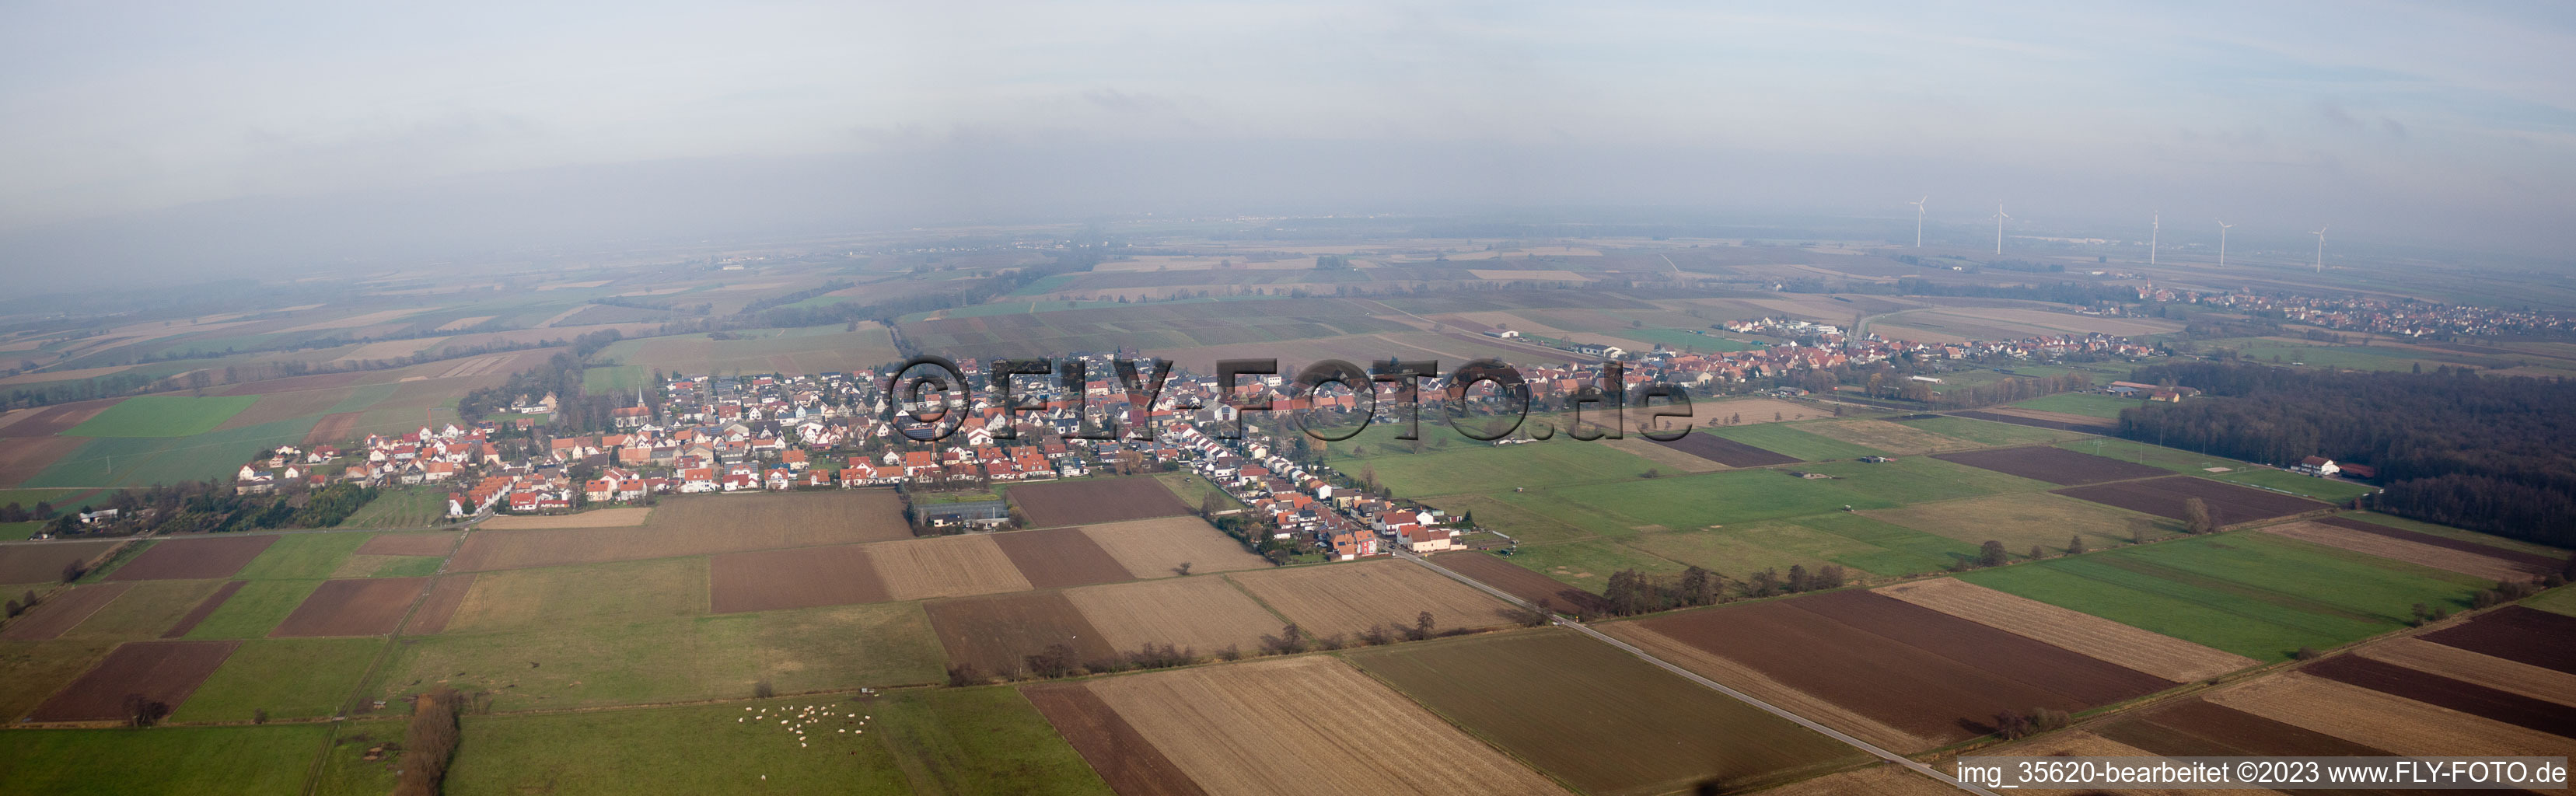 Vue aérienne de Panorama à Freckenfeld dans le département Rhénanie-Palatinat, Allemagne